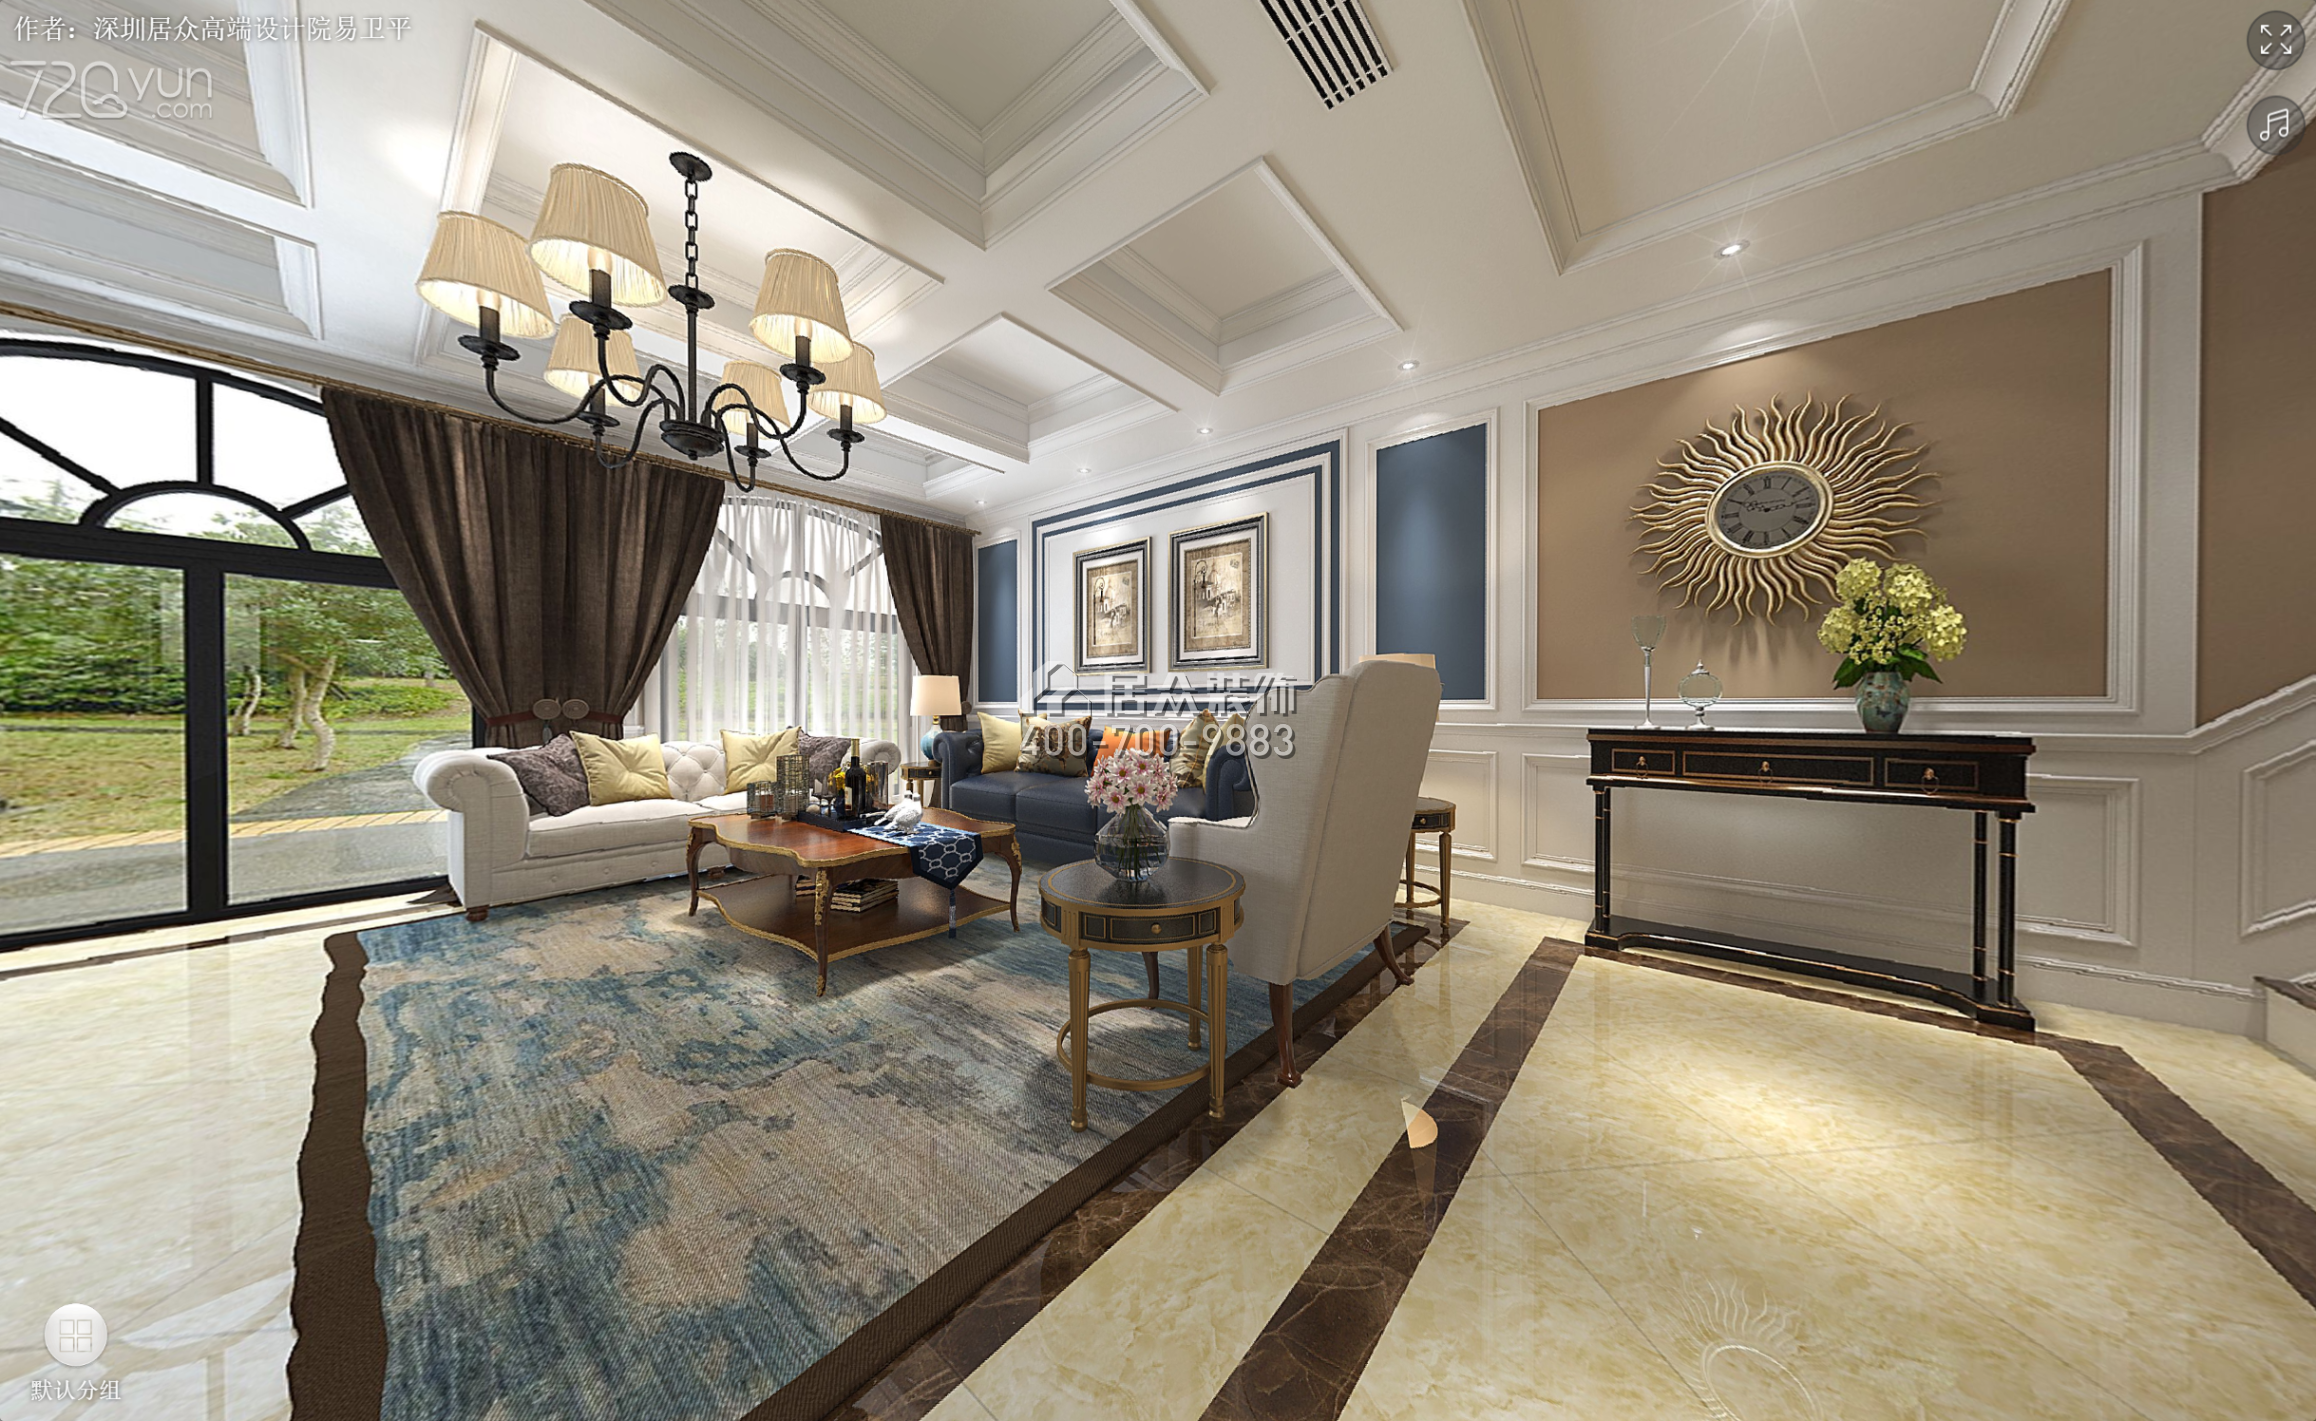 慶隆南山高爾夫國際社區350平方米美式風格別墅戶型客廳裝修效果圖